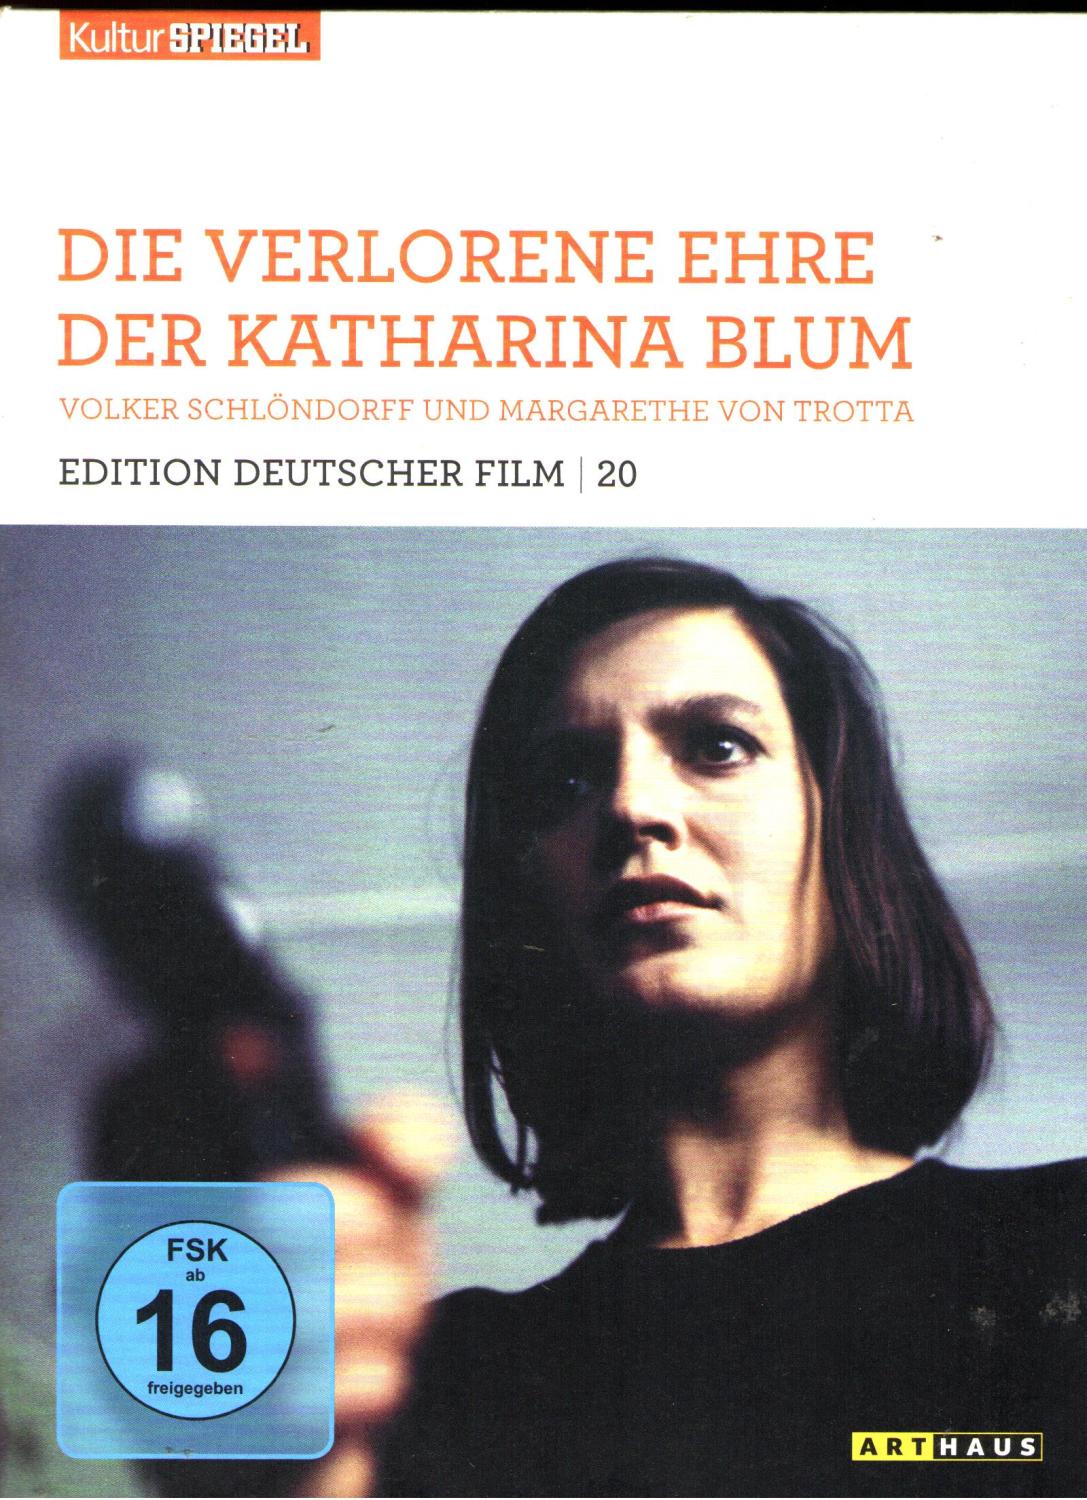 Die verlorene Ehre der Katharina Blum: DVD (edition Deutscher Film 20) - Volker Schlöndorff, Margarethe von Trotta